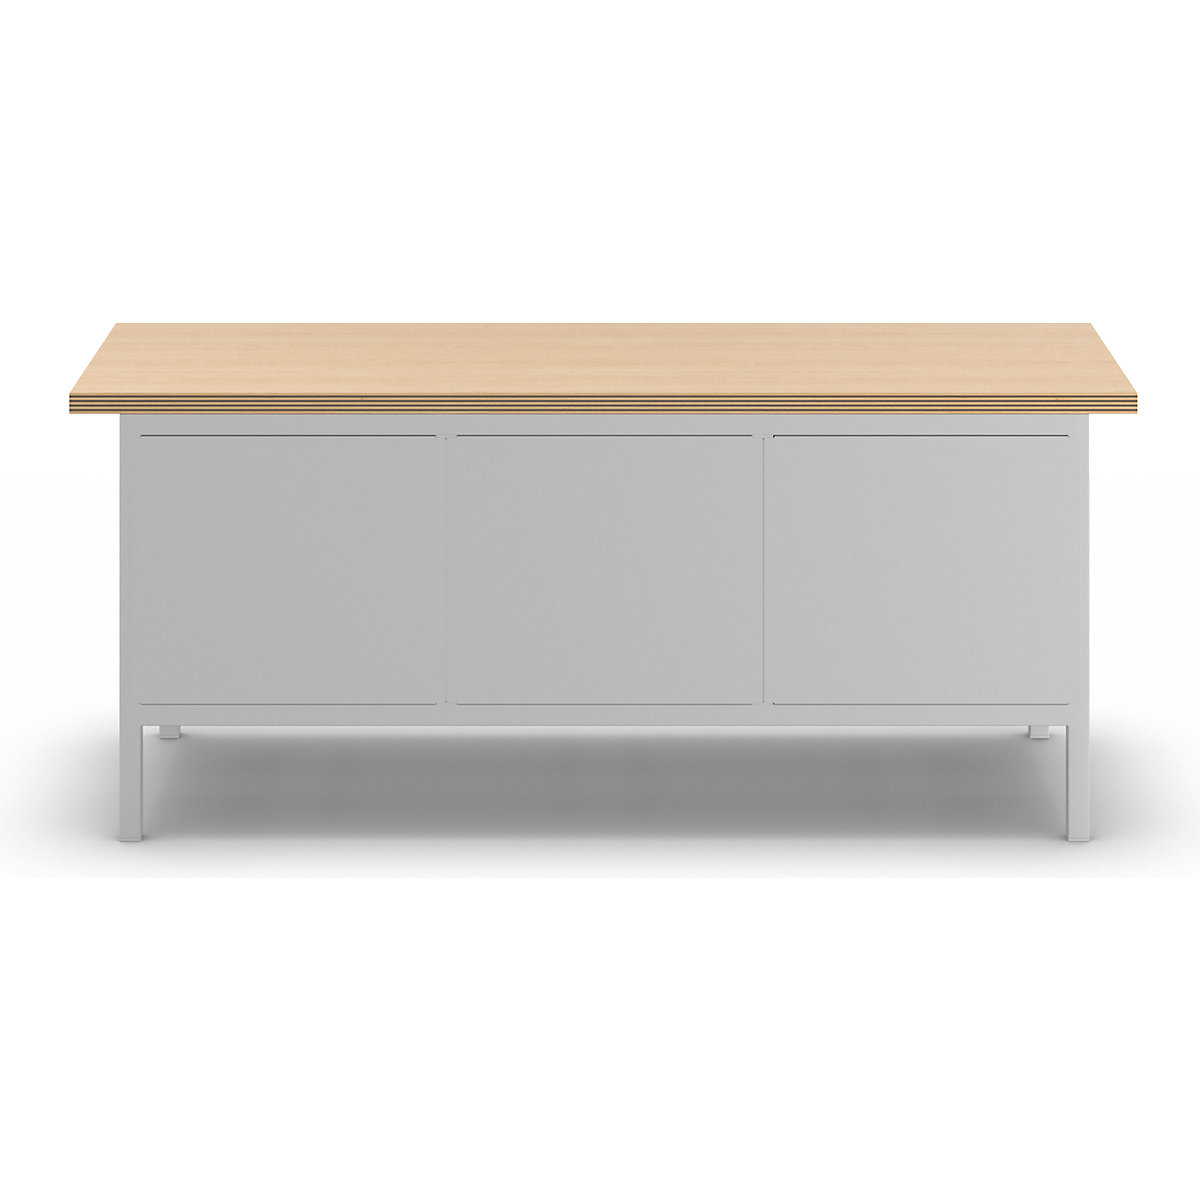 Stół warsztatowy, konstrukcja ramowa – LISTA (Zdjęcie produktu 7)-6